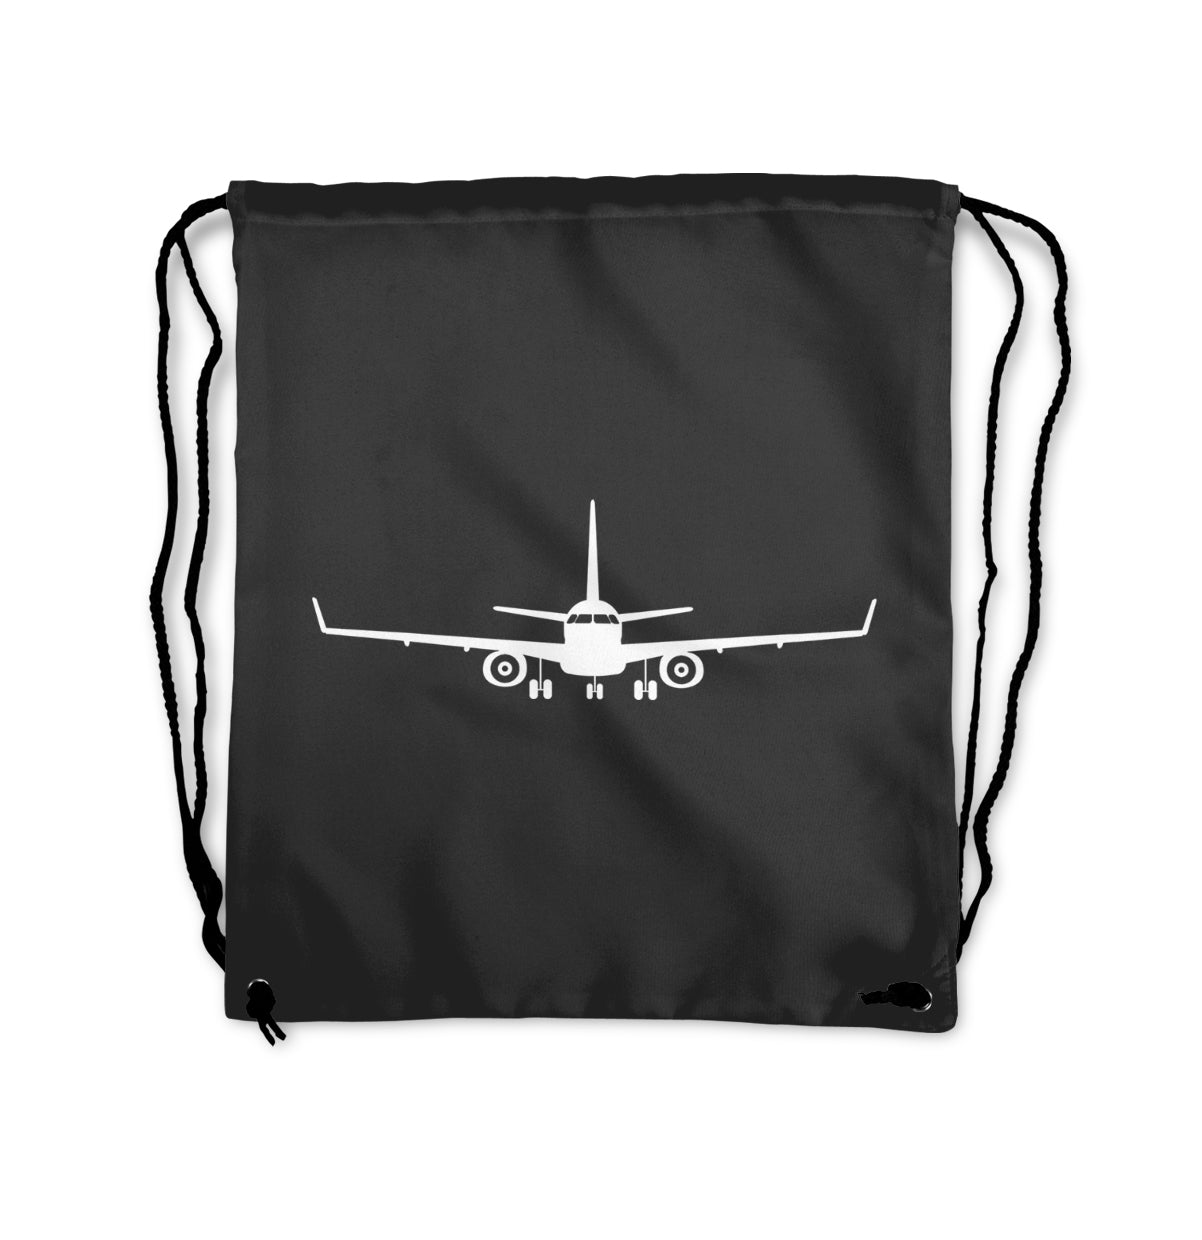 Embraer E-190 Silhouette Plane Designed Drawstring Bags